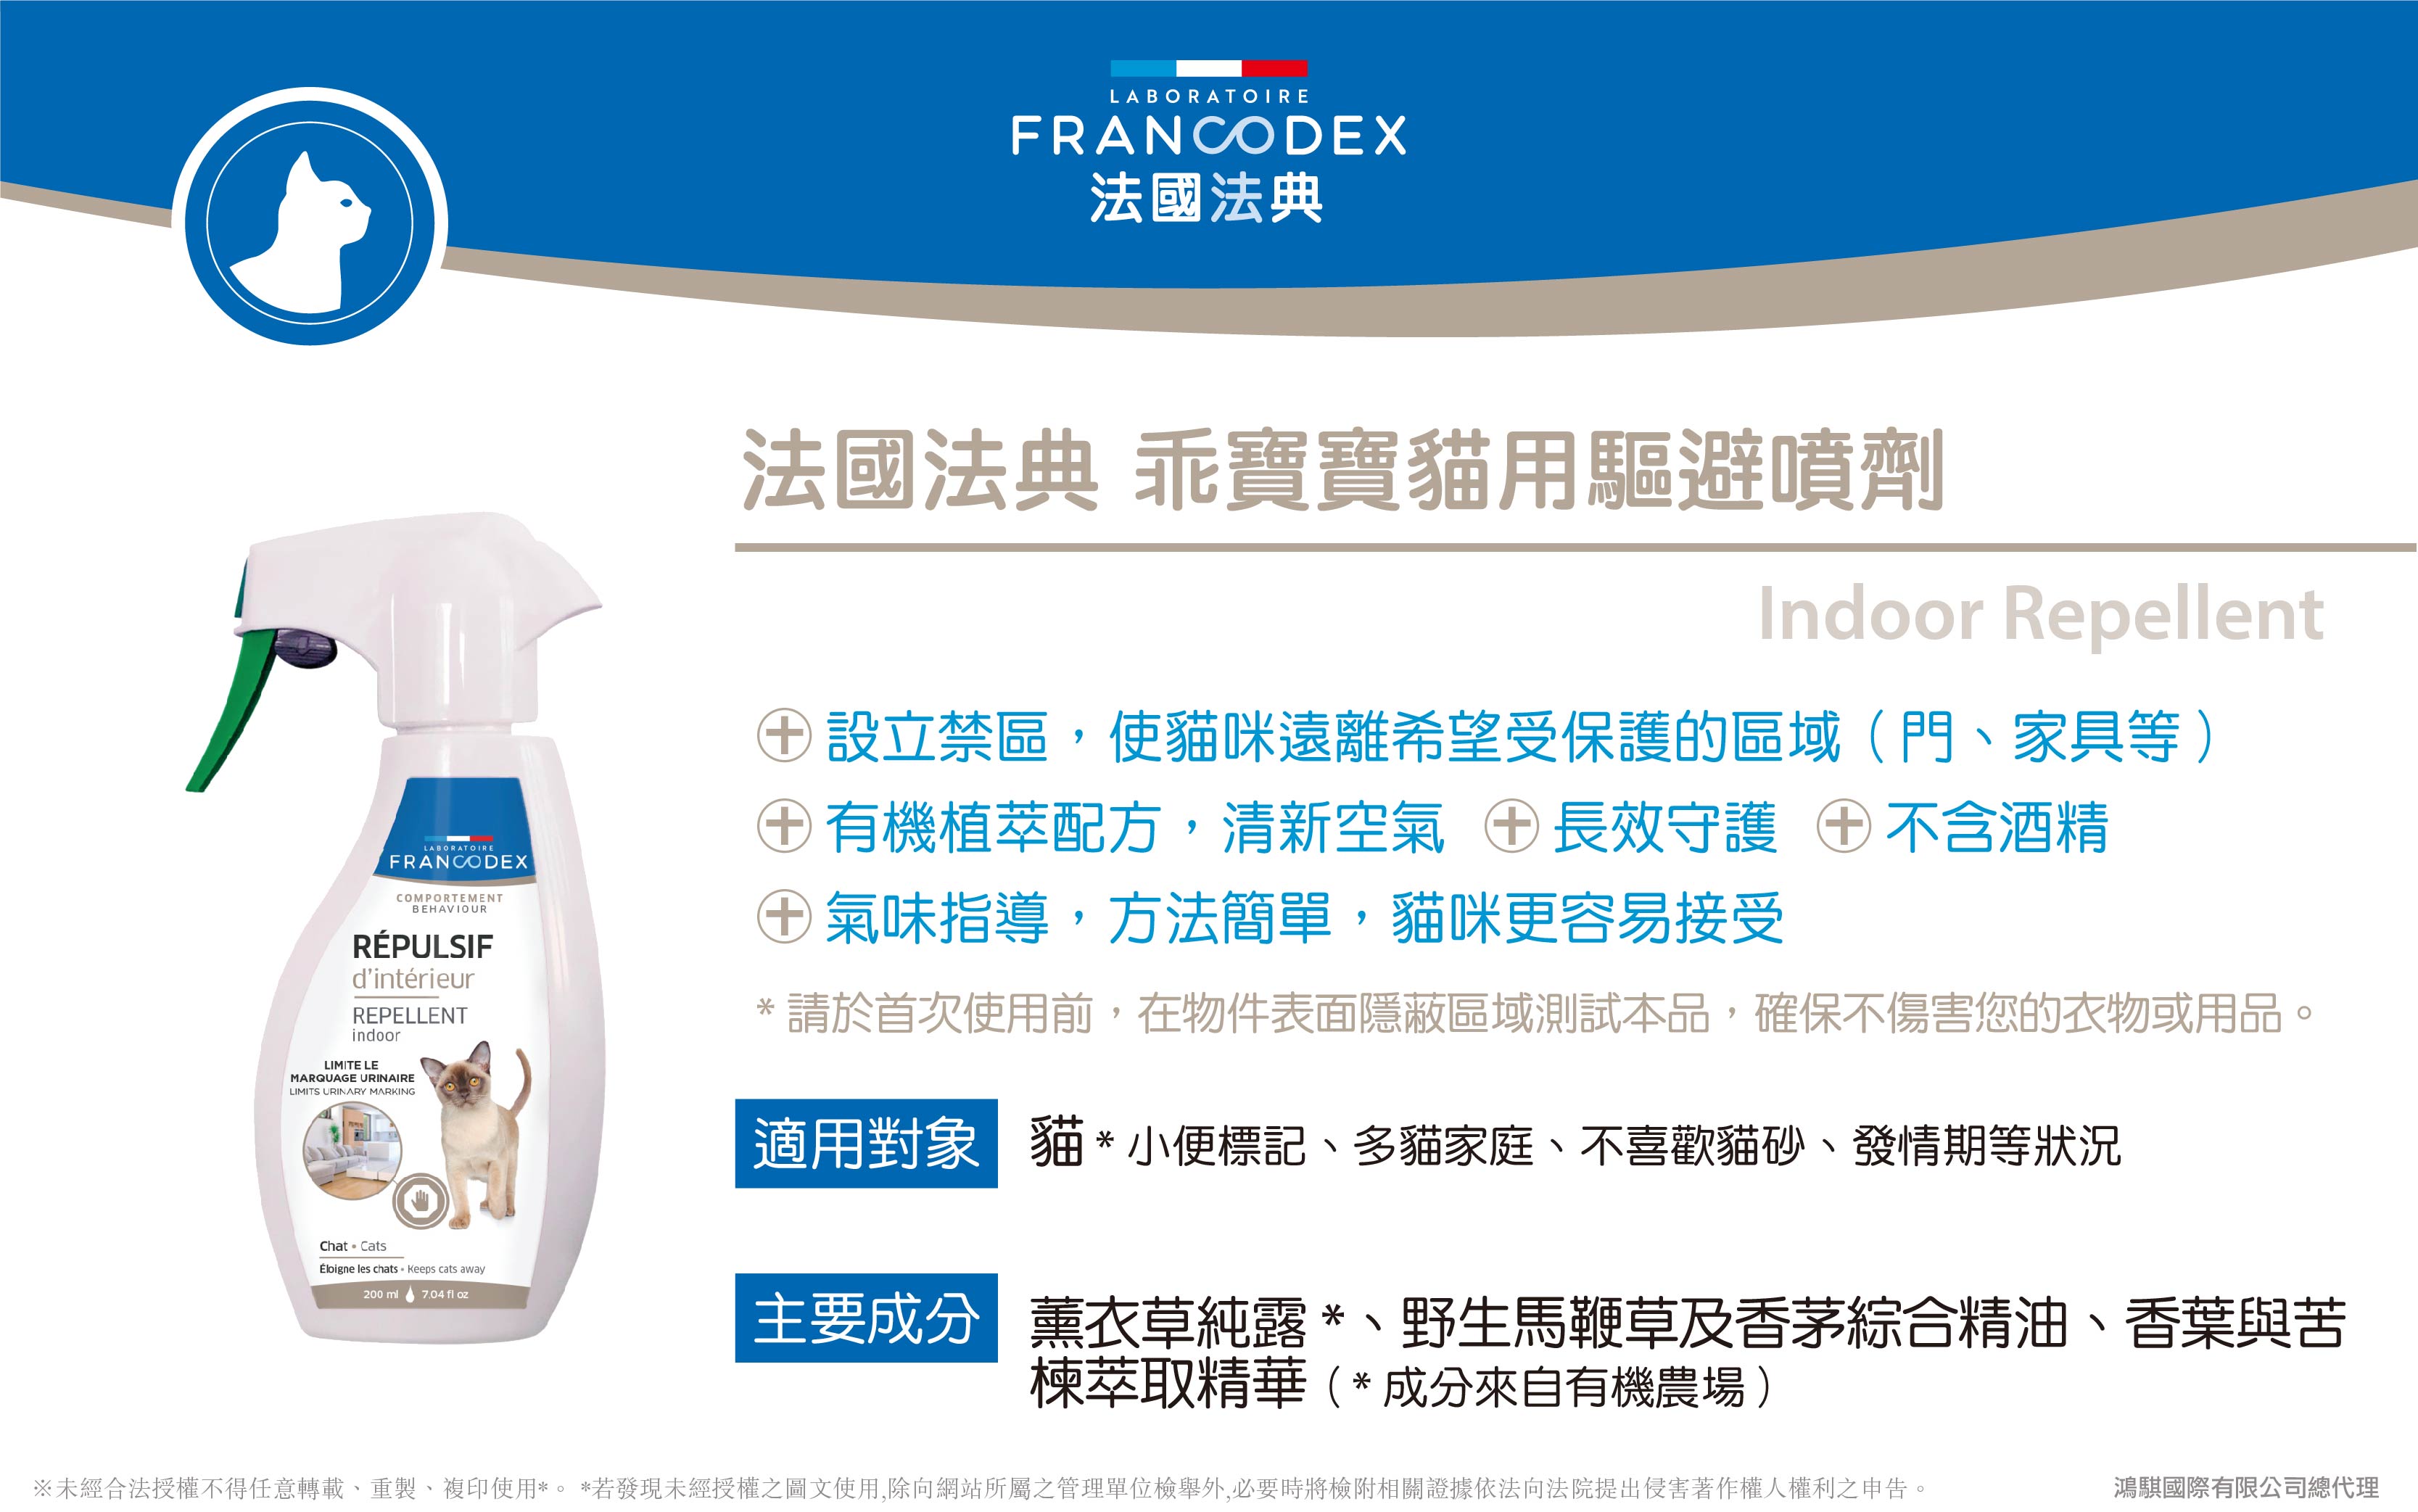 【Francodex】官網-產品介紹_32法國法典乖寶寶貓用驅避噴劑